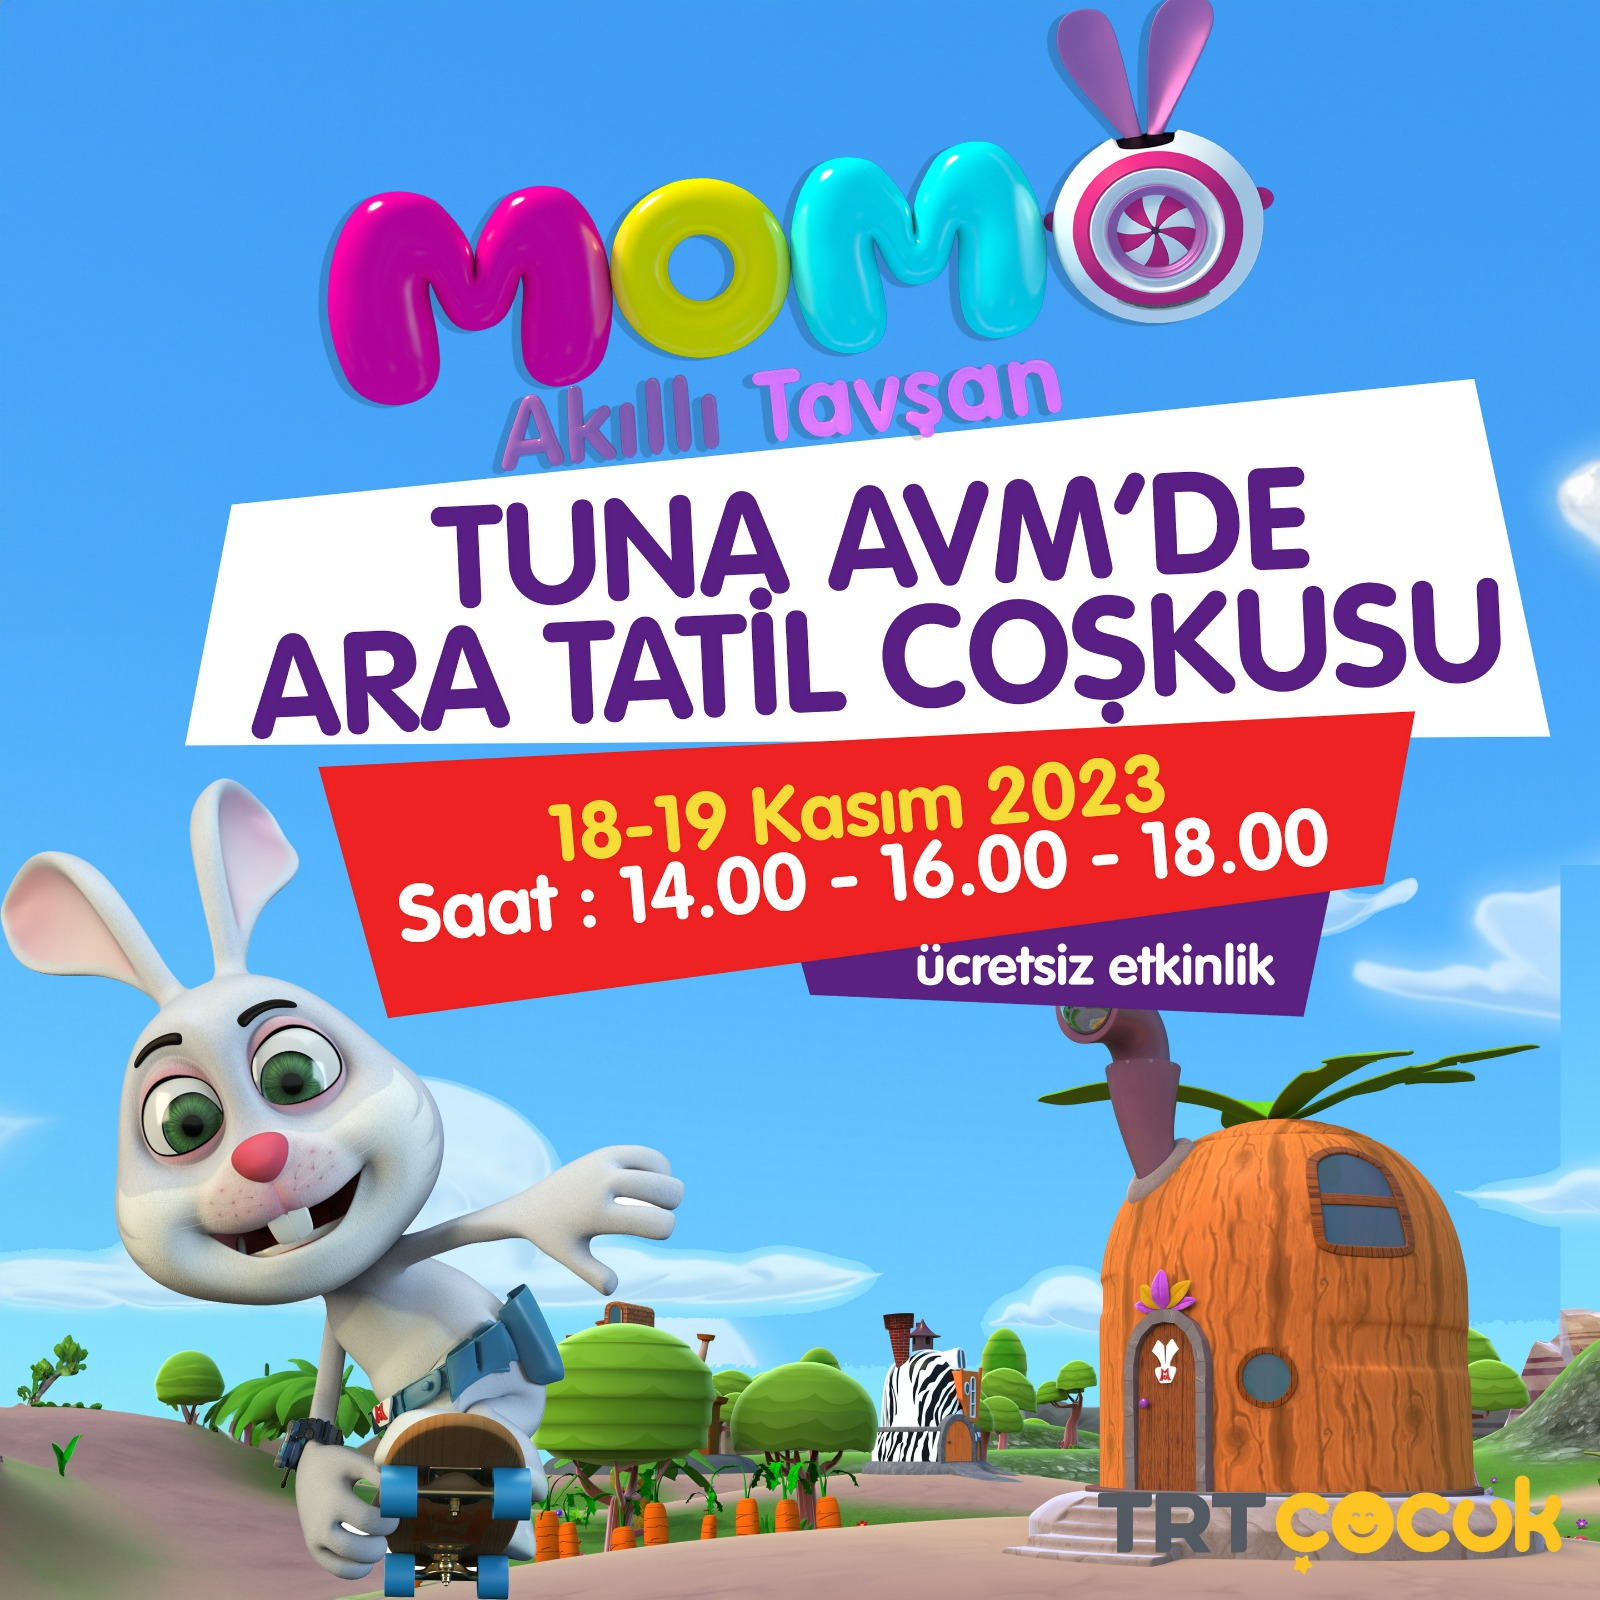 Akıllı Tavşan Momo ile Tuna Avm’de ara tatili eğlenceye dönüşüyor